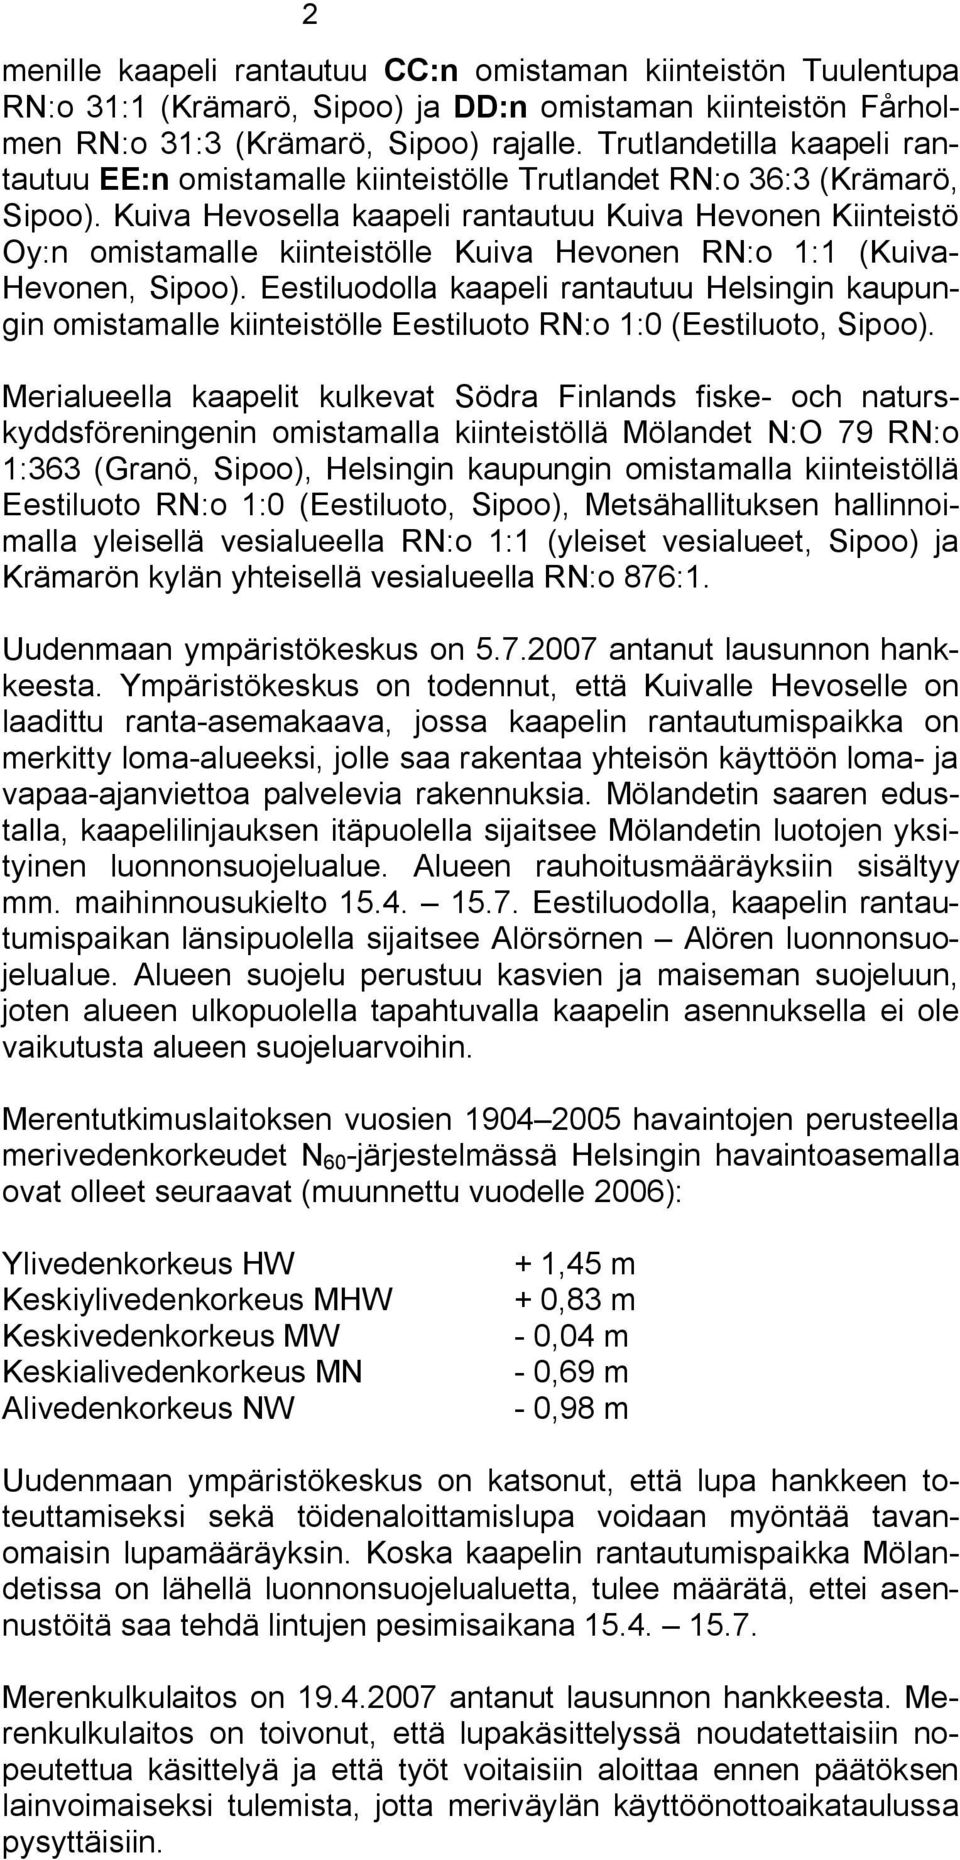 Kuiva Hevosella kaapeli rantautuu Kuiva Hevonen Kiinteistö Oy:n omistamalle kiinteistölle Kuiva Hevonen RN:o 1:1 (Kuiva Hevonen, Sipoo).